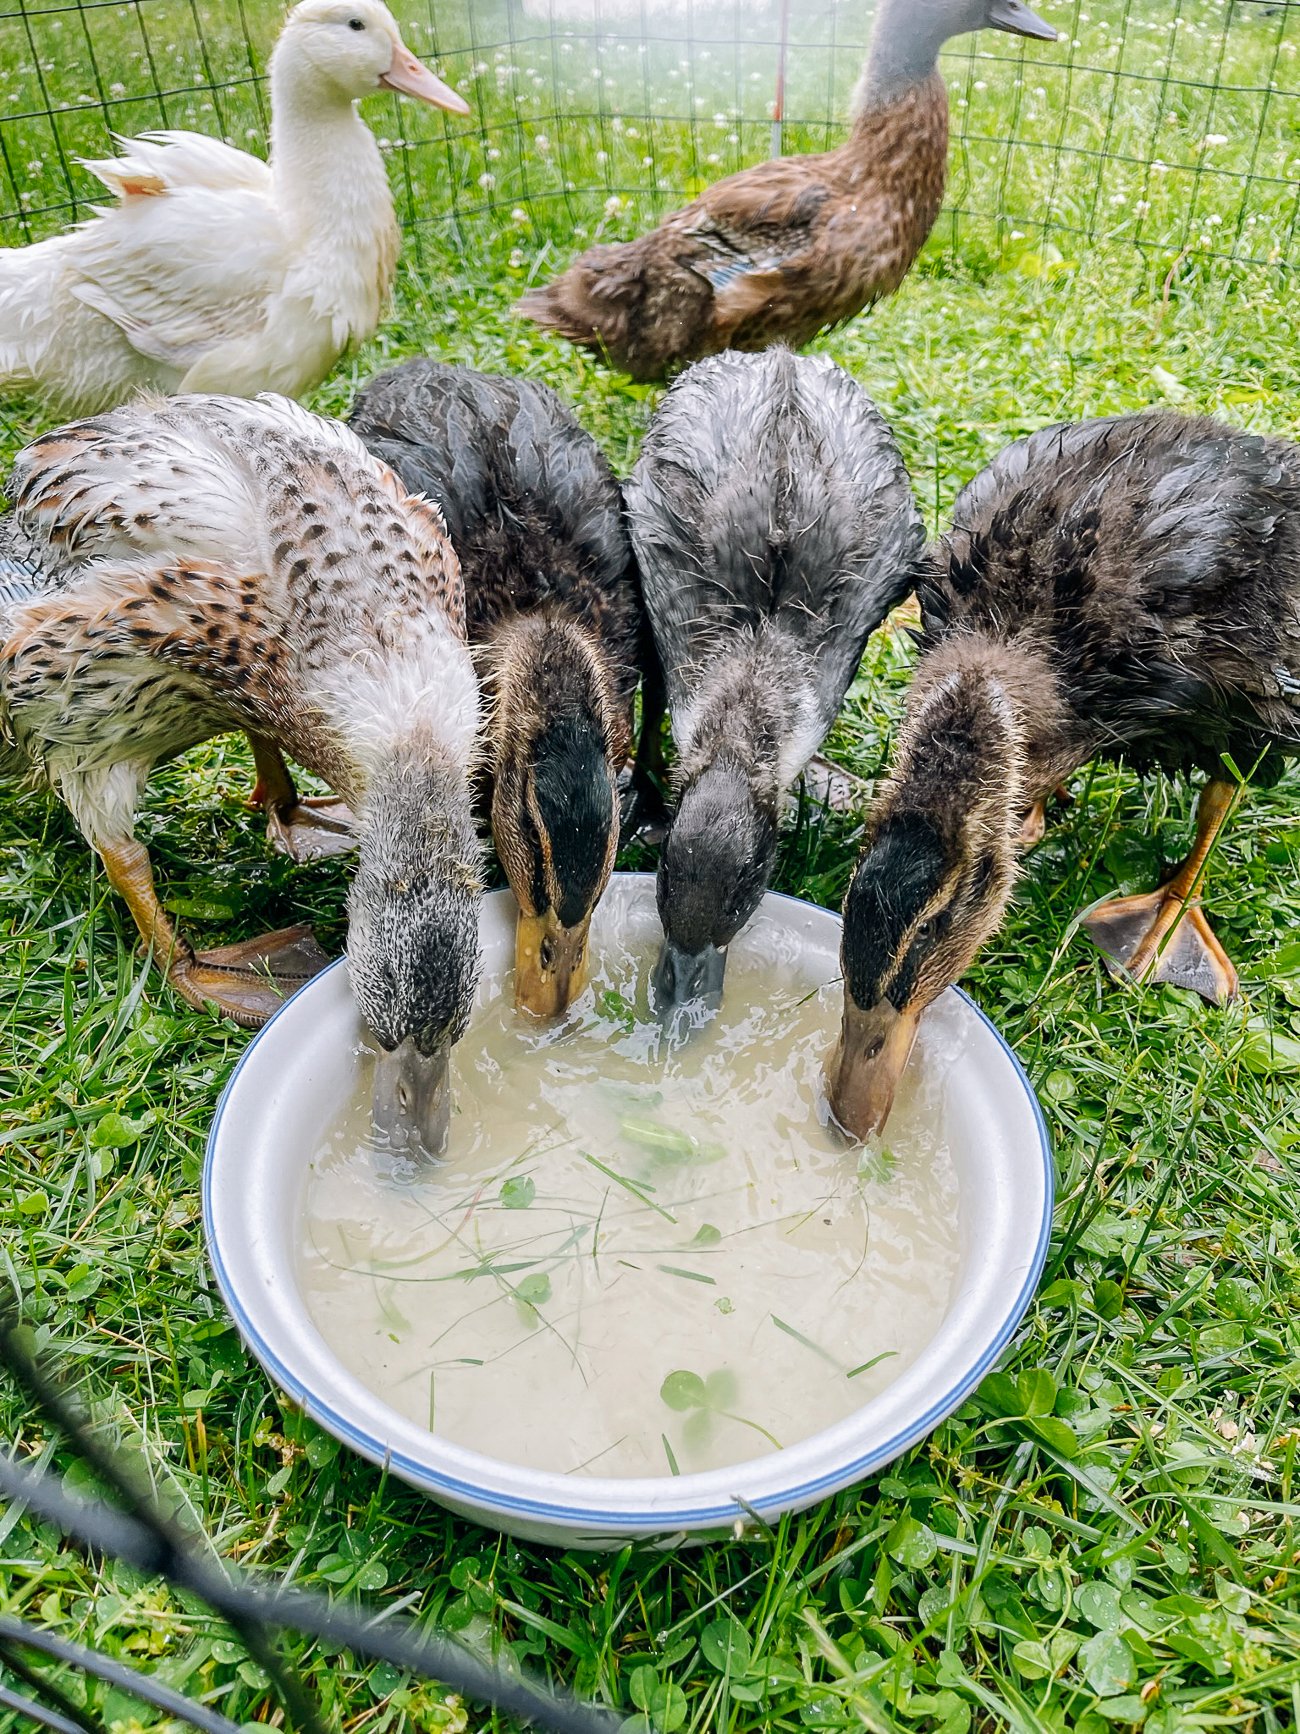 ducklings drinking water outside